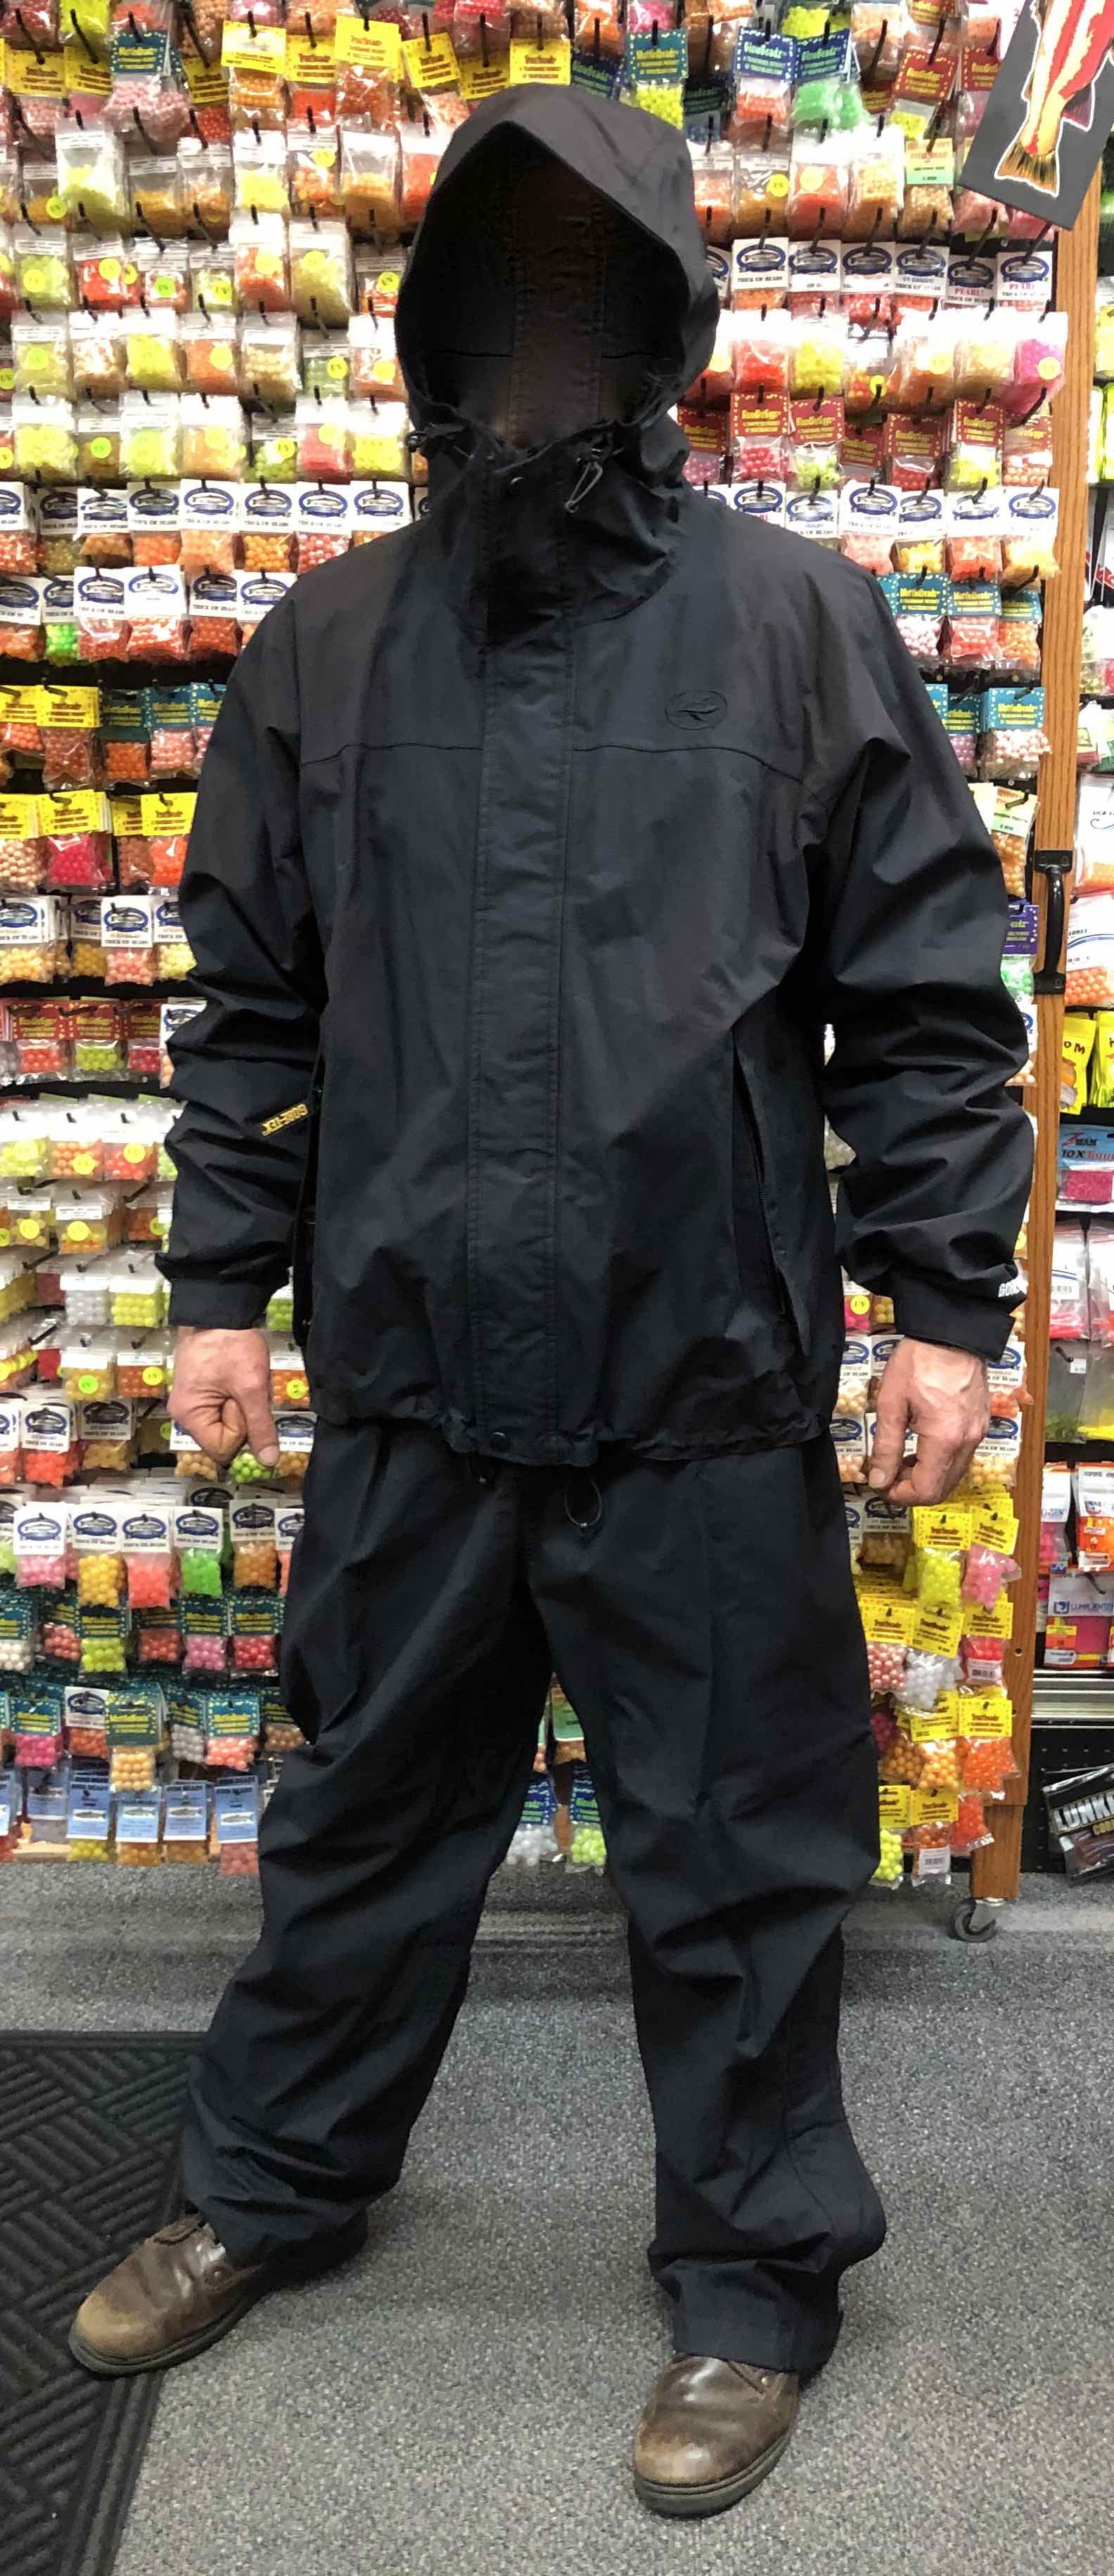 Goretex Bass Pro Rainsuit Jacket and Pant Size Large - LIKE NEW! - $50